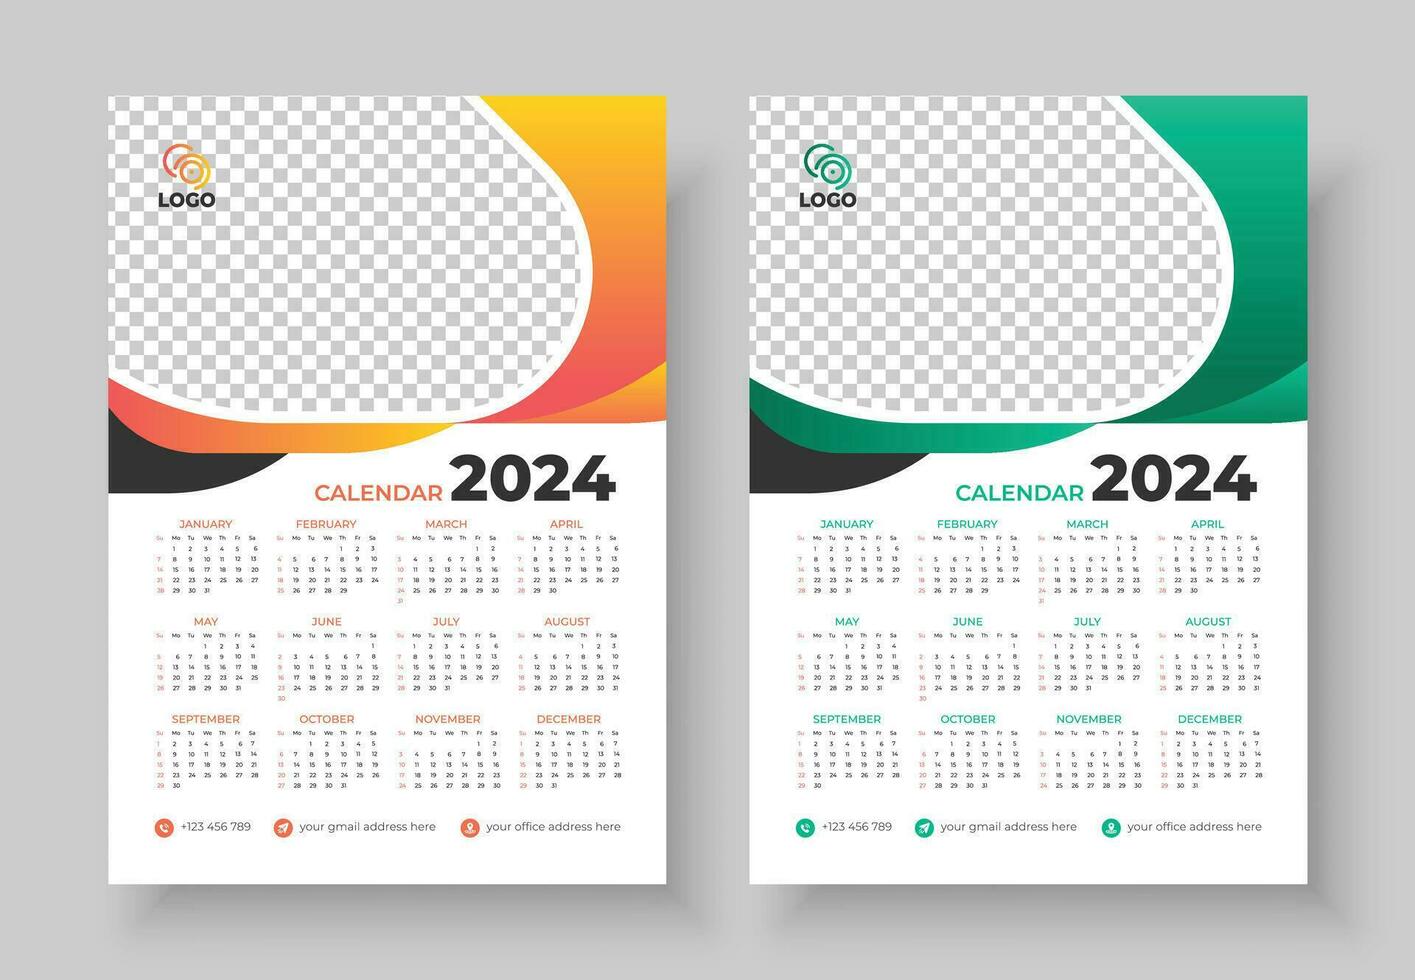 Mauer Kalender 2024 Vorlage Design. einer Seite Kalender. 12 Monate Kalender. Woche beginnt auf Sonntag vektor